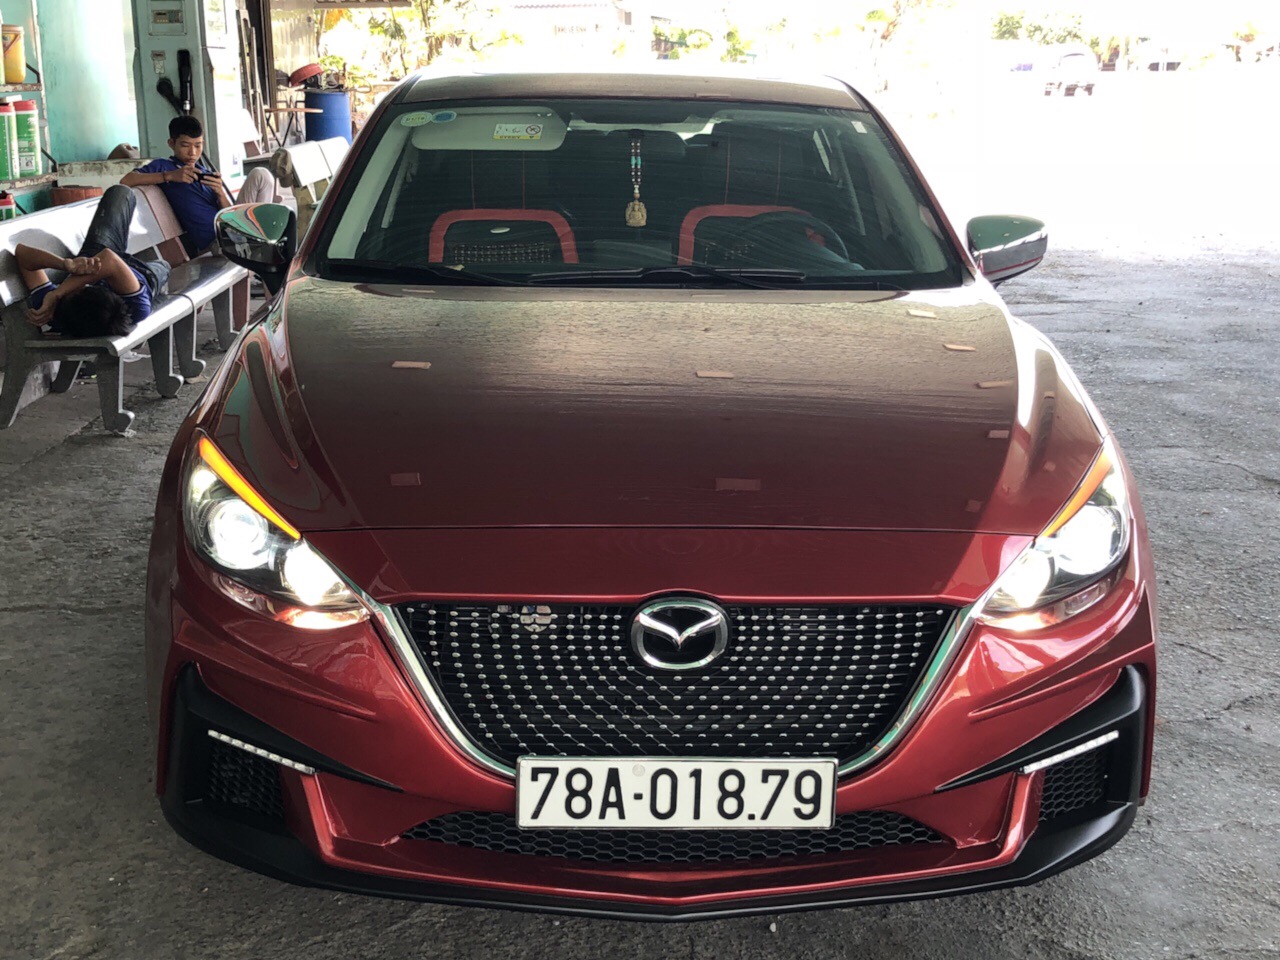 Bodykit Mazda 3 mẫu facelift 2018